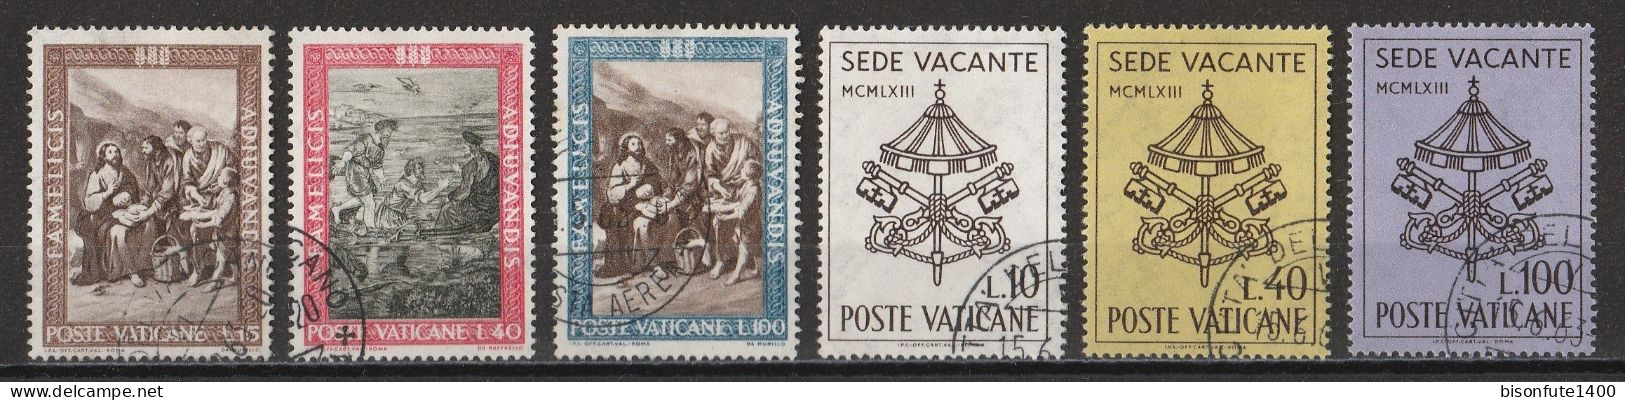 Vatican 1963 : Timbres Yvert & Tellier N° 374 - 375 - 376 - 380 - 381 - 382 - 383 - 384 - 385 - 386 - 387 - 388 -....... - Oblitérés